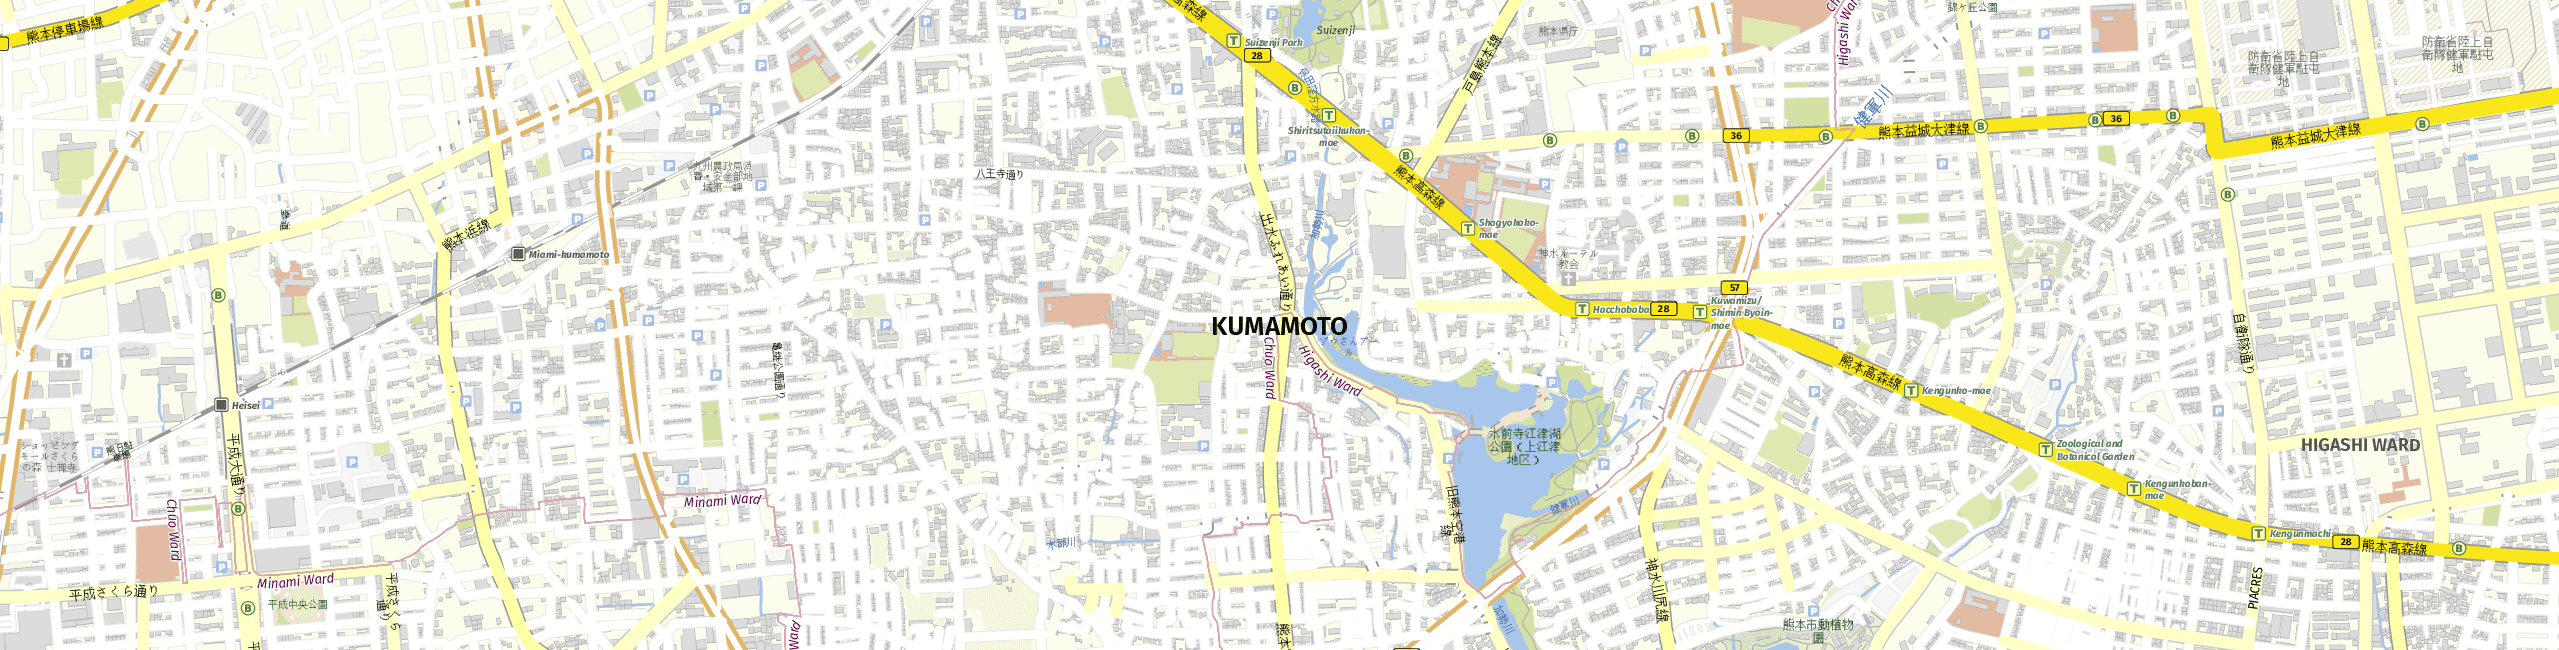 Stadtplan Kumamoto zum Downloaden.